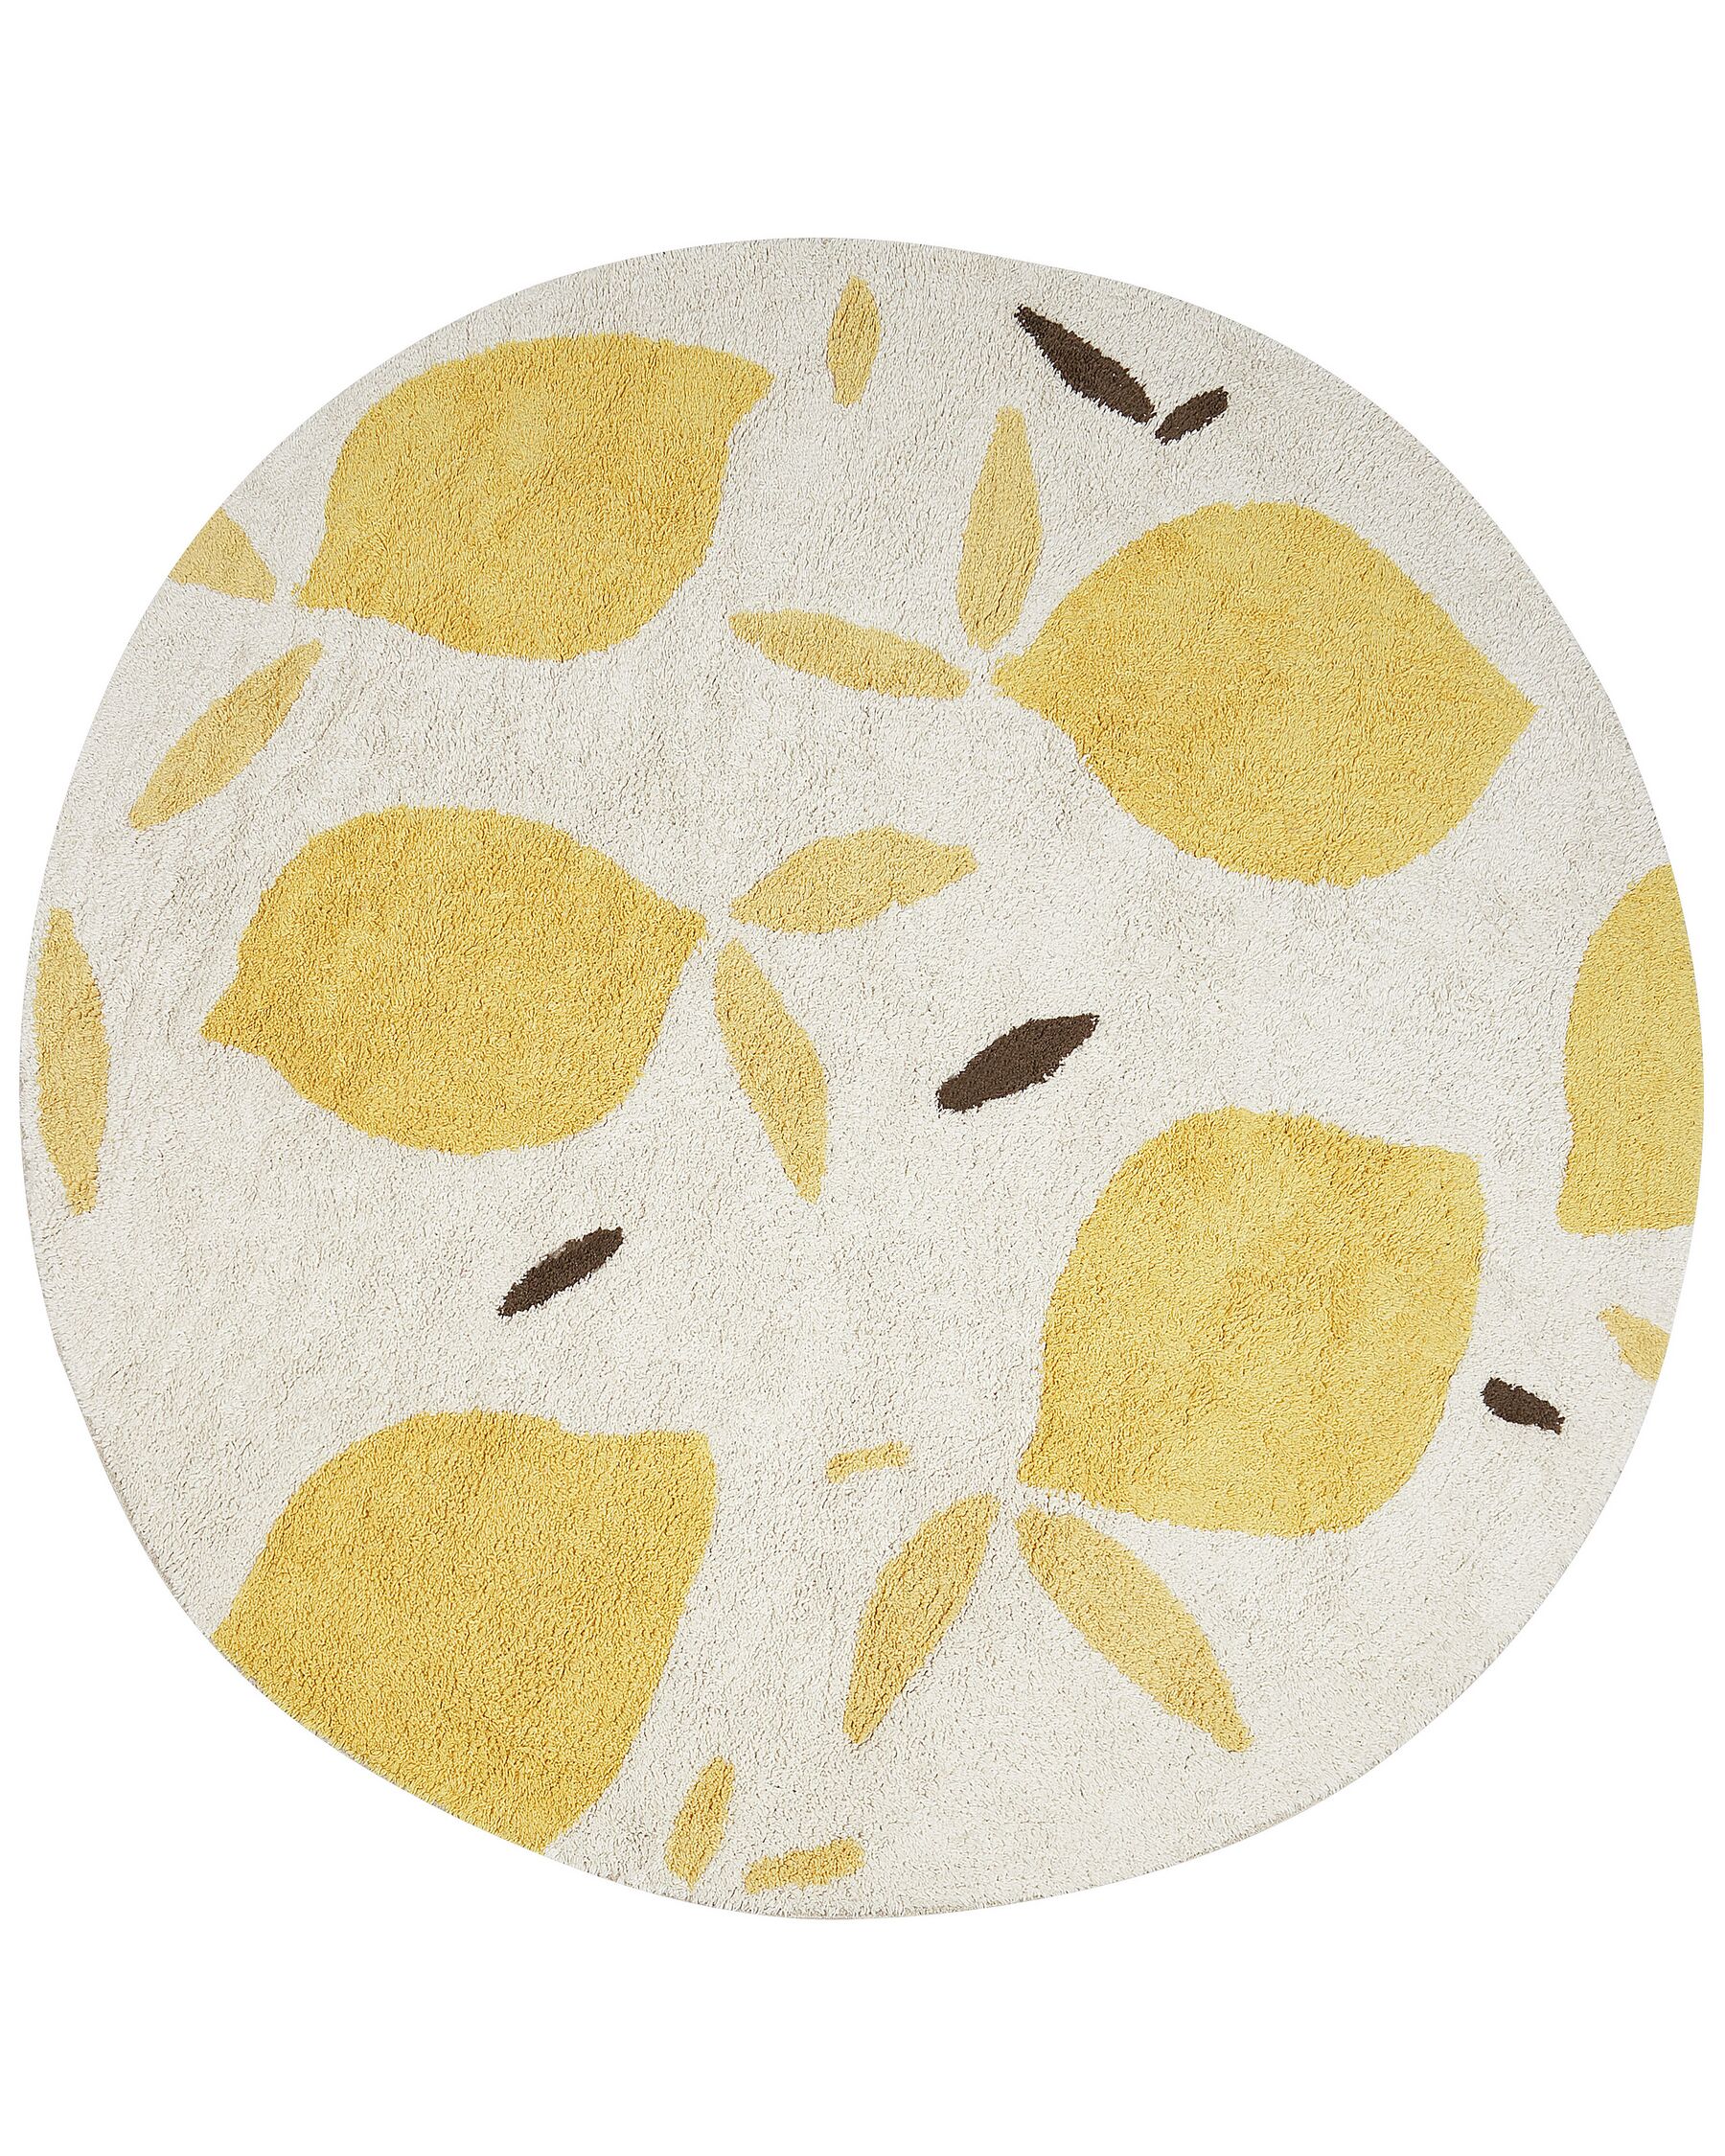 Tappeto per bambini cotone beige chiaro e giallo ⌀ 140 cm MAWAND_903871